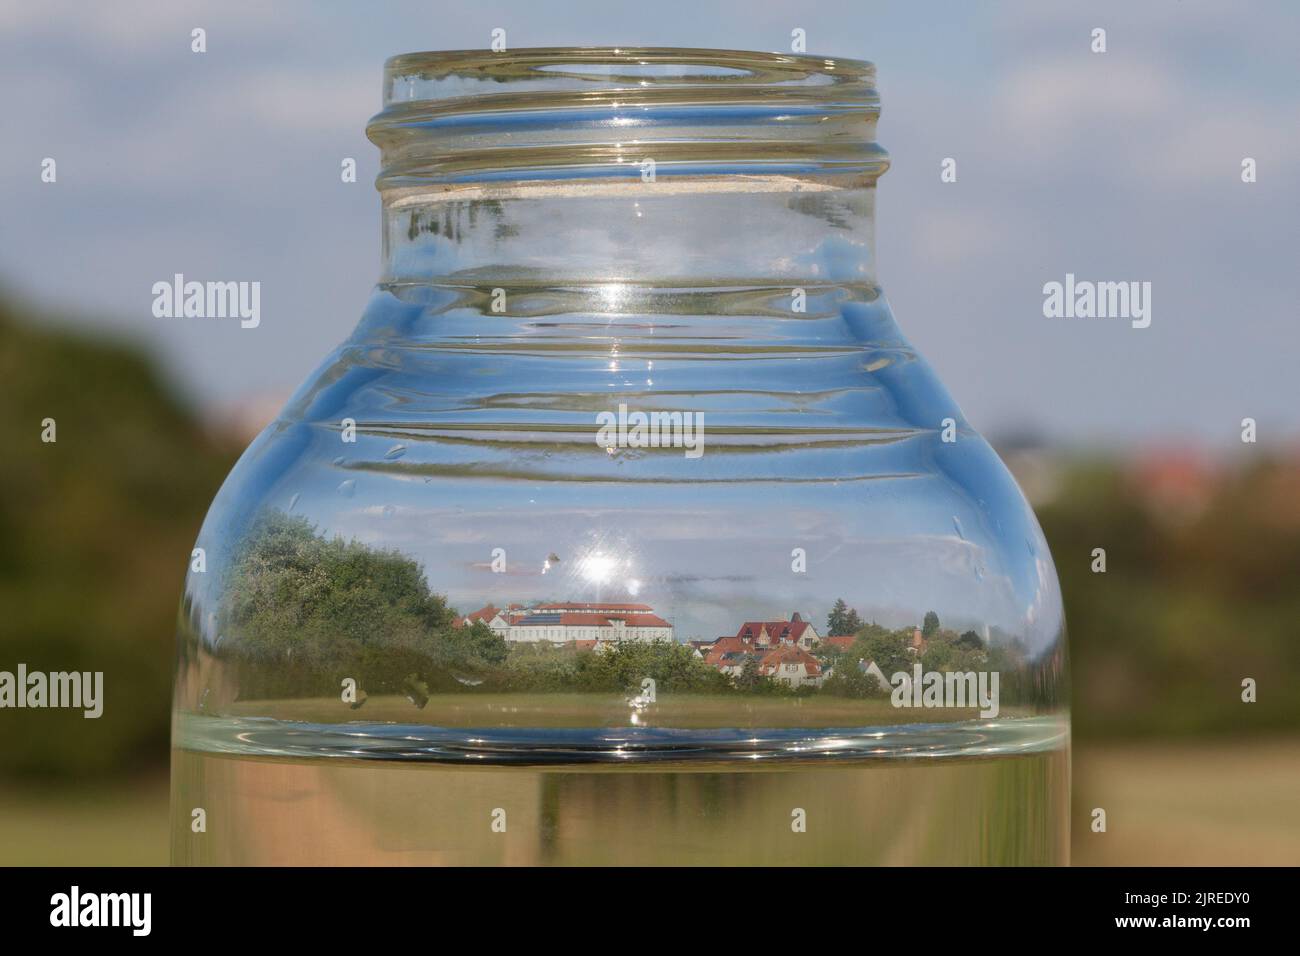 Asciugato, una città che si riflette in una bottiglia d'acqua. La crisi climatica sta inoltre drenando acqua in Germania. I livelli delle acque sotterranee stanno diminuendo e minacciano il Foto Stock